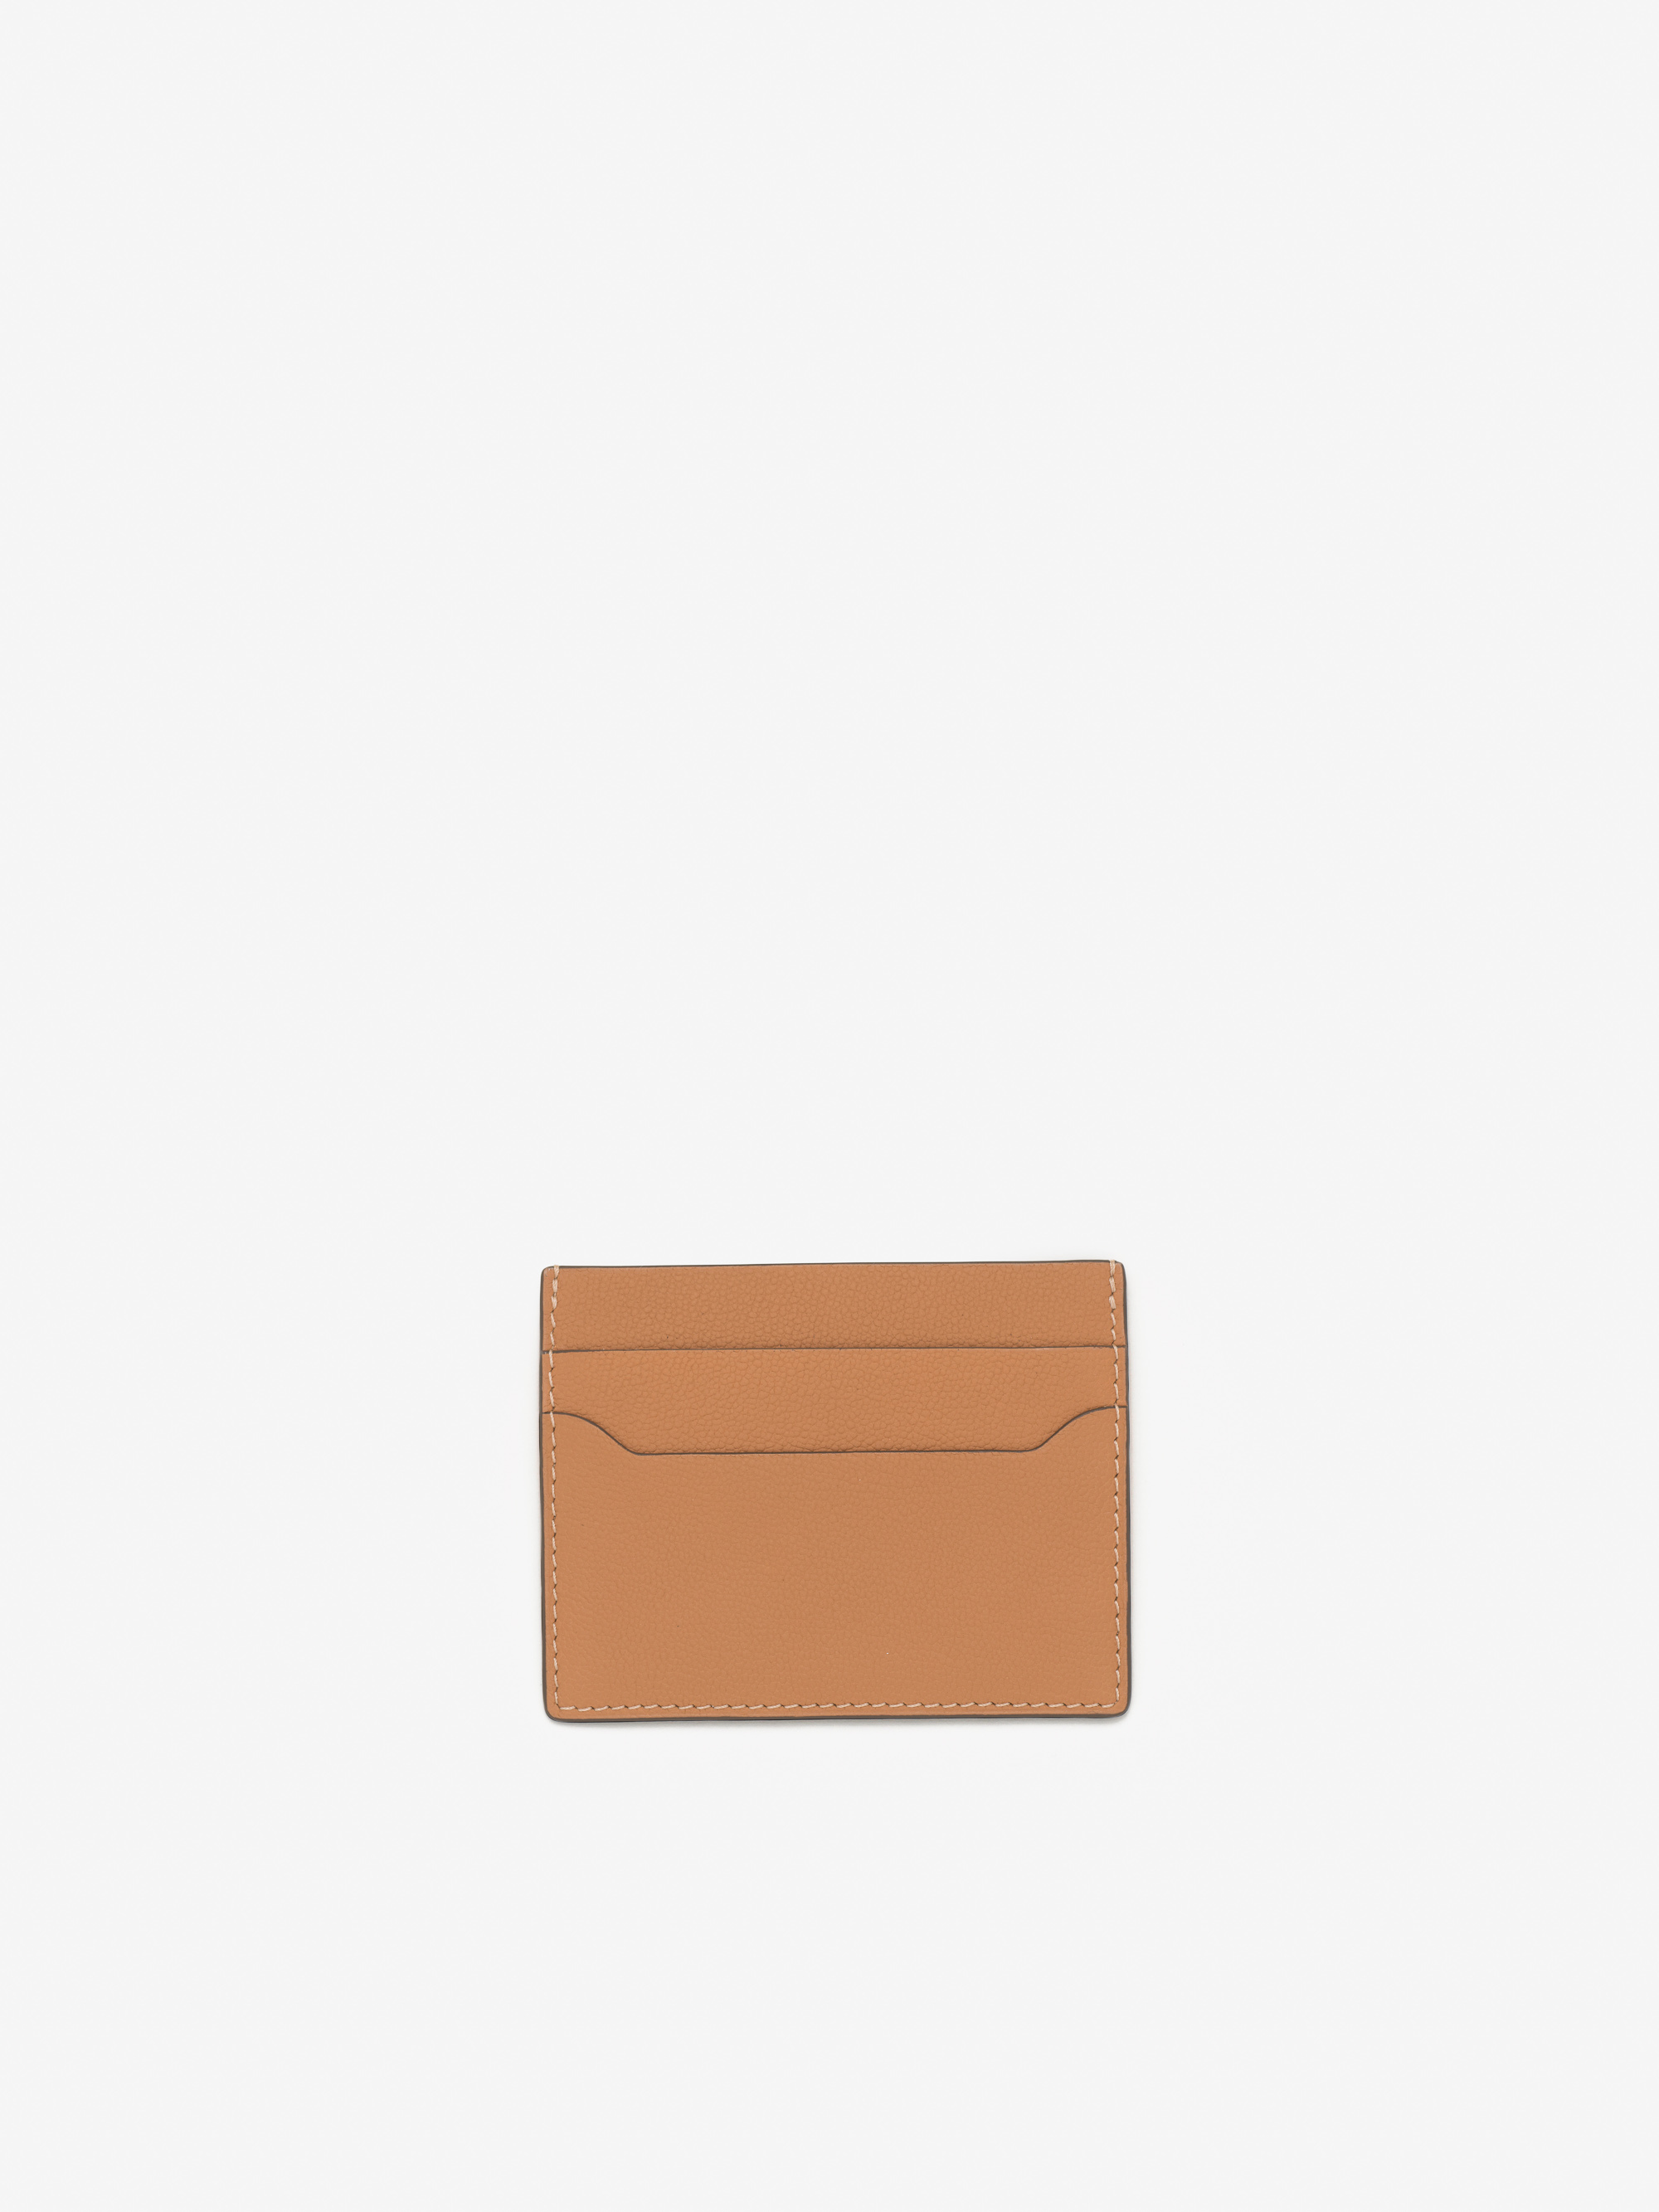 Livre Wallet Mini | Delvaux